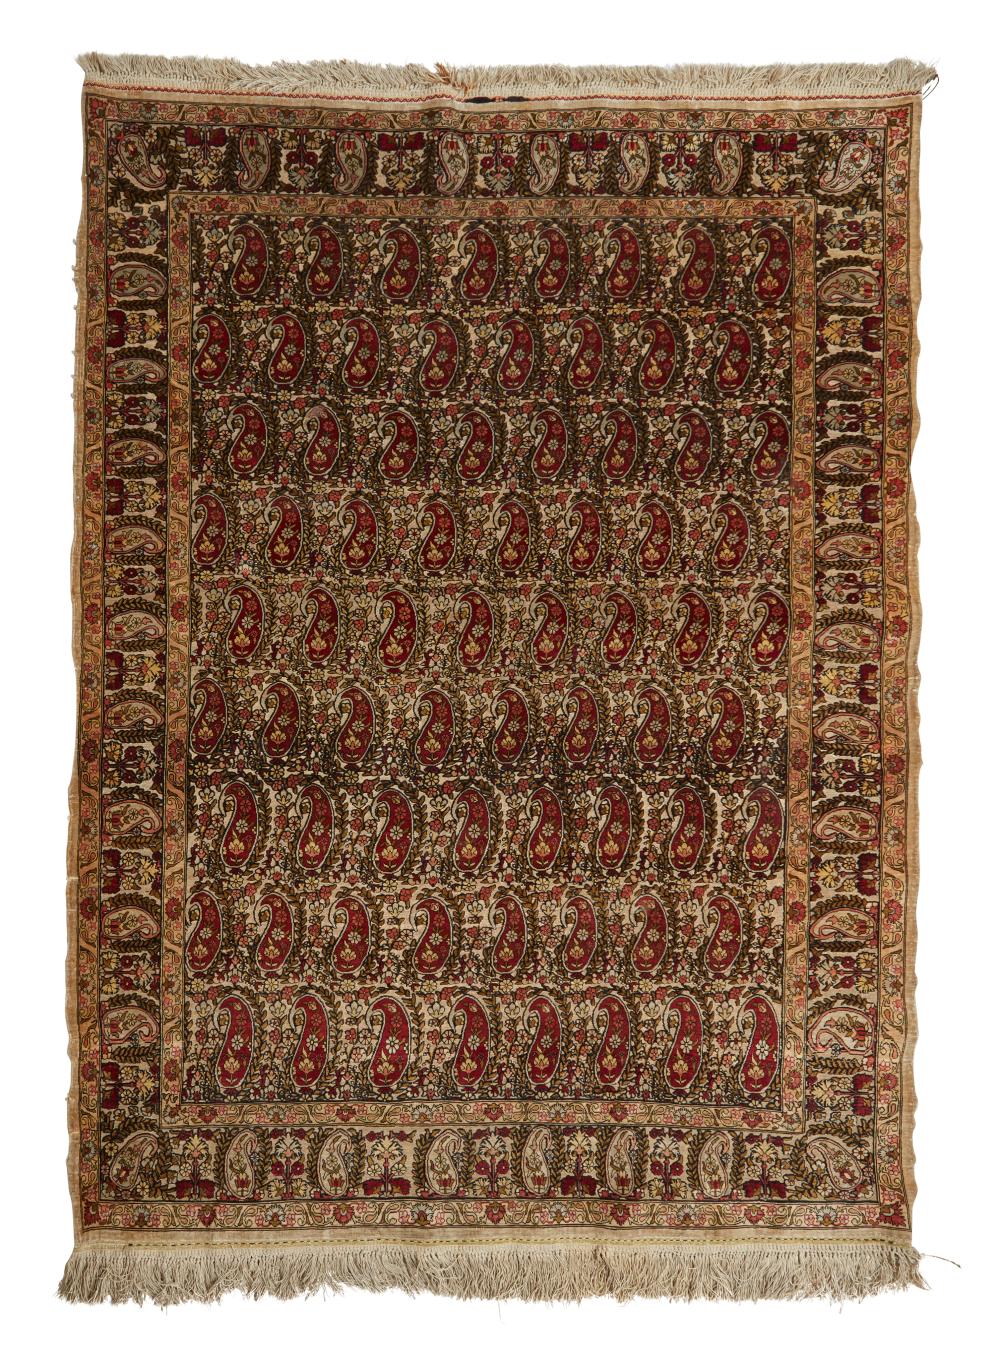 A TURKISH RUGA Turkish rug,  20th